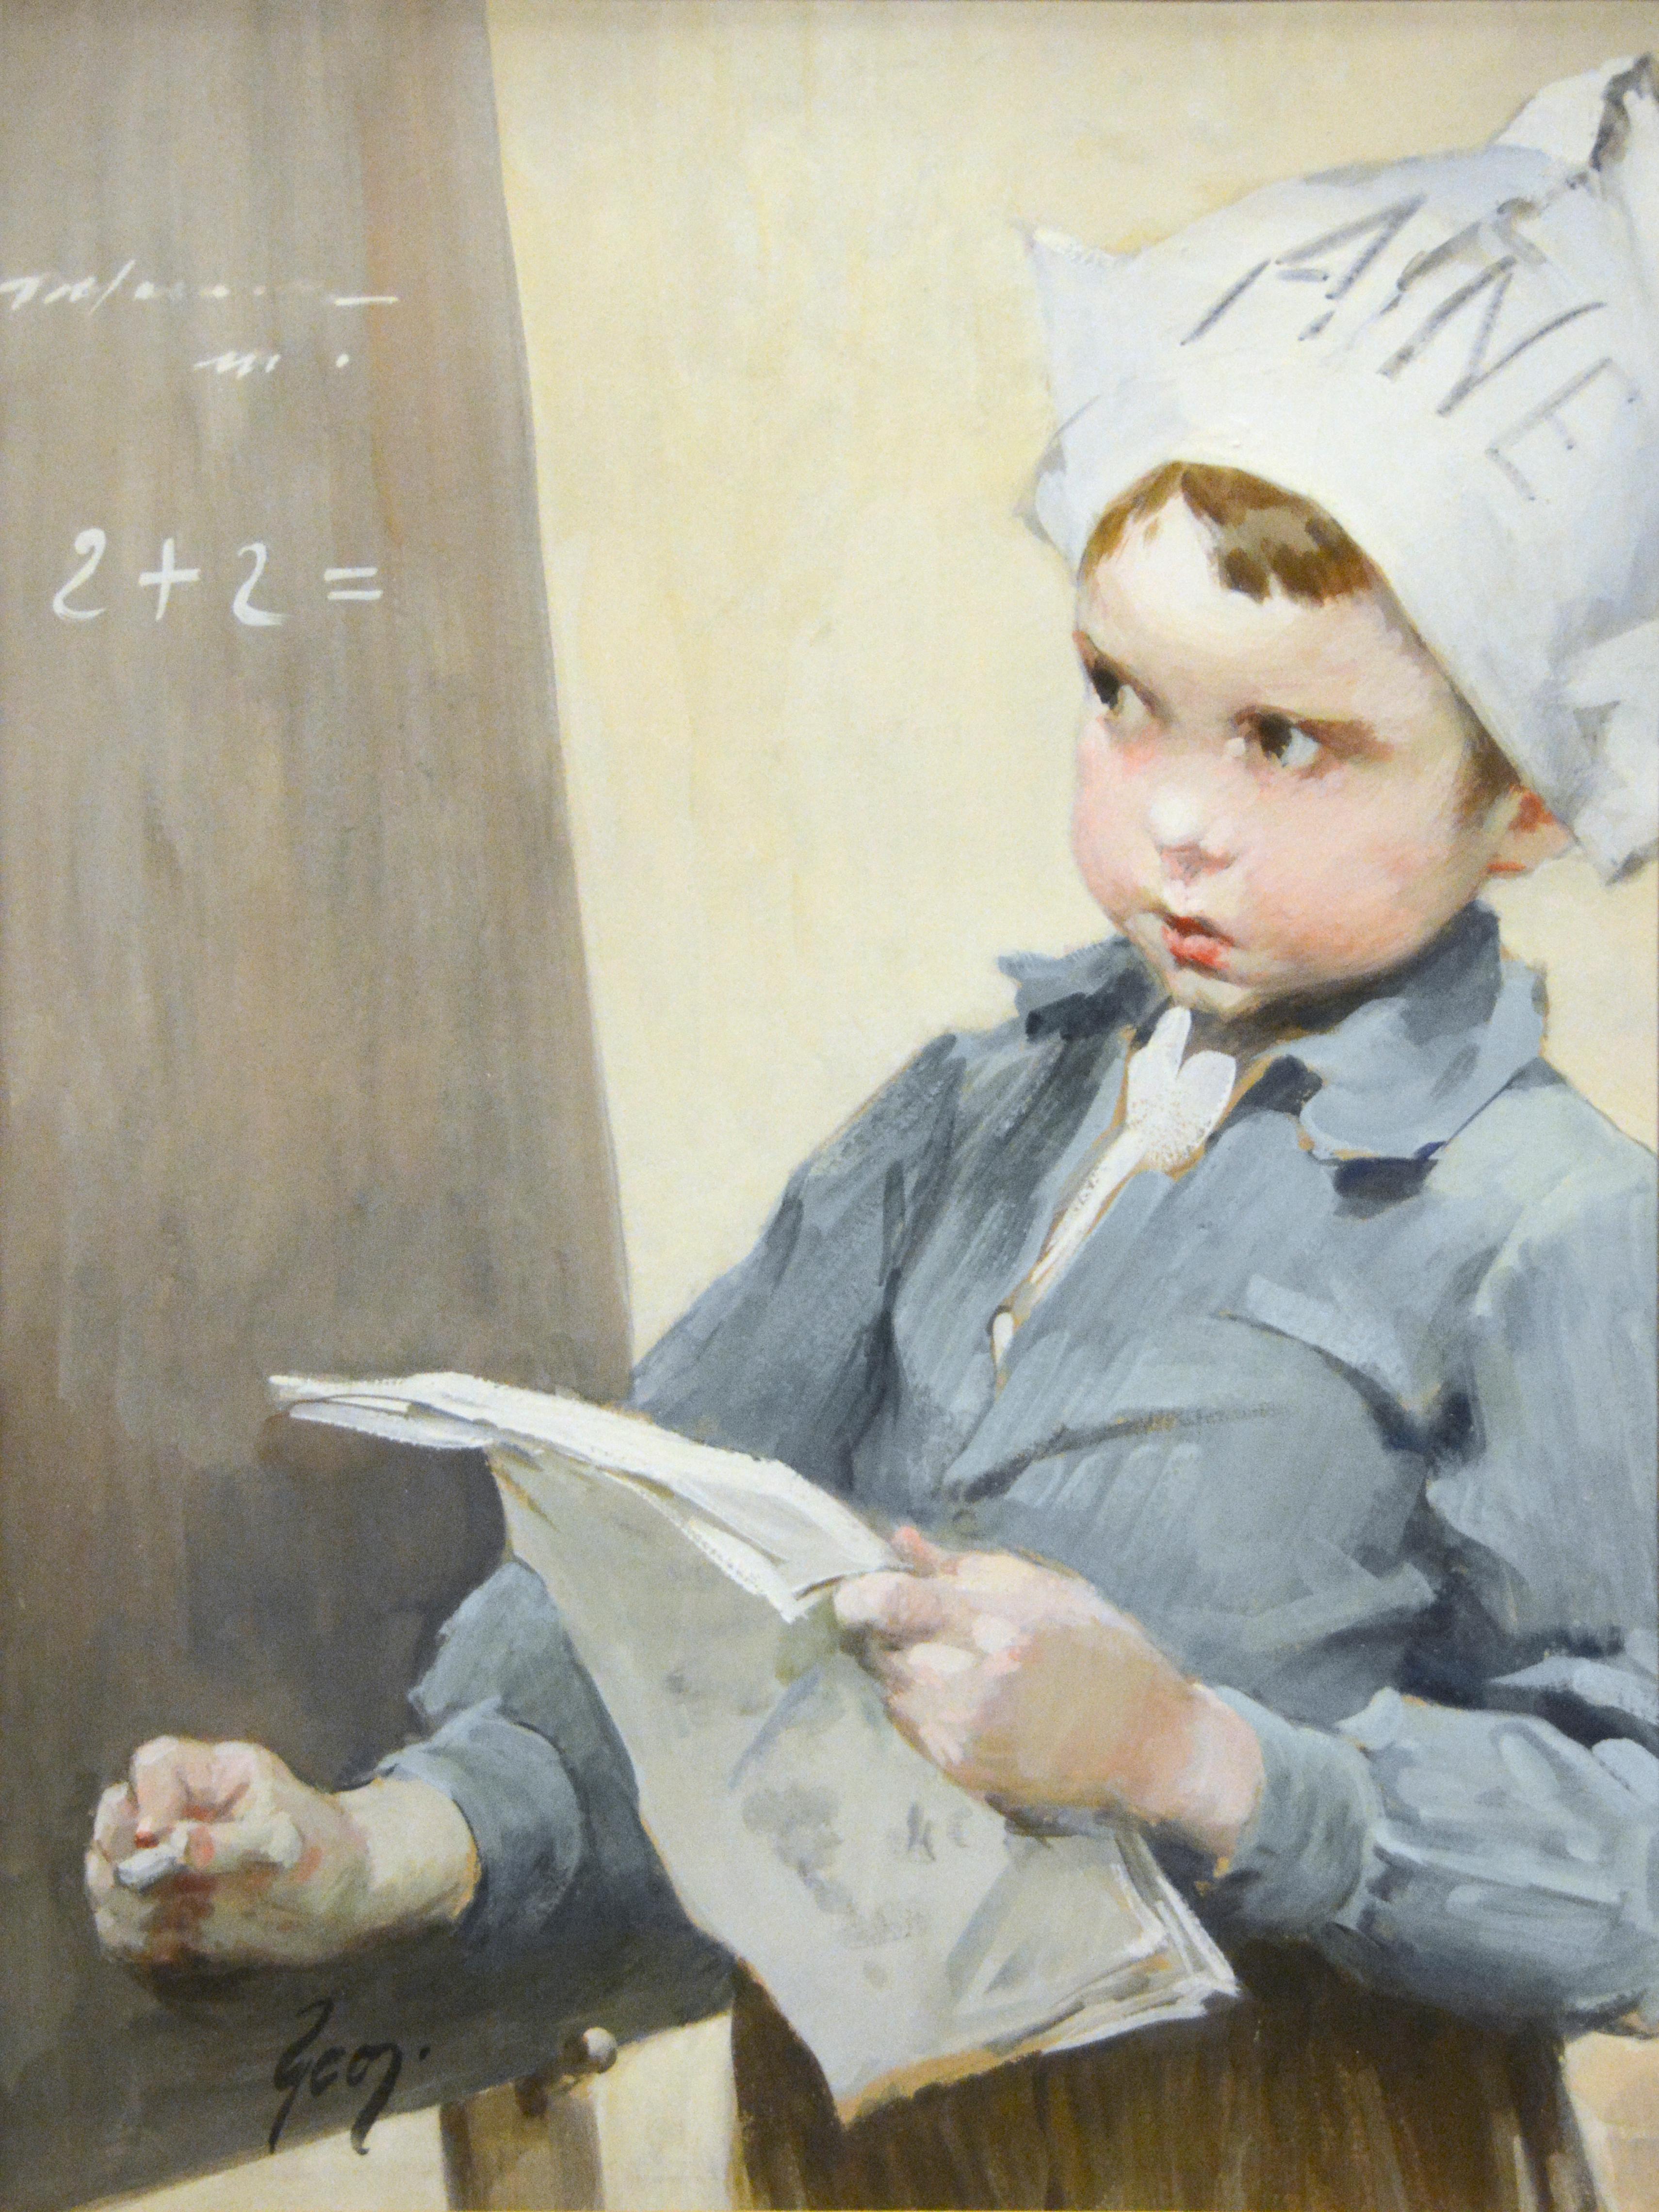 Henri Jules Jean Geoffroy Portrait - Genre Scene of School Boy by Henri J. Geoffroy titled "Solving the Problem"